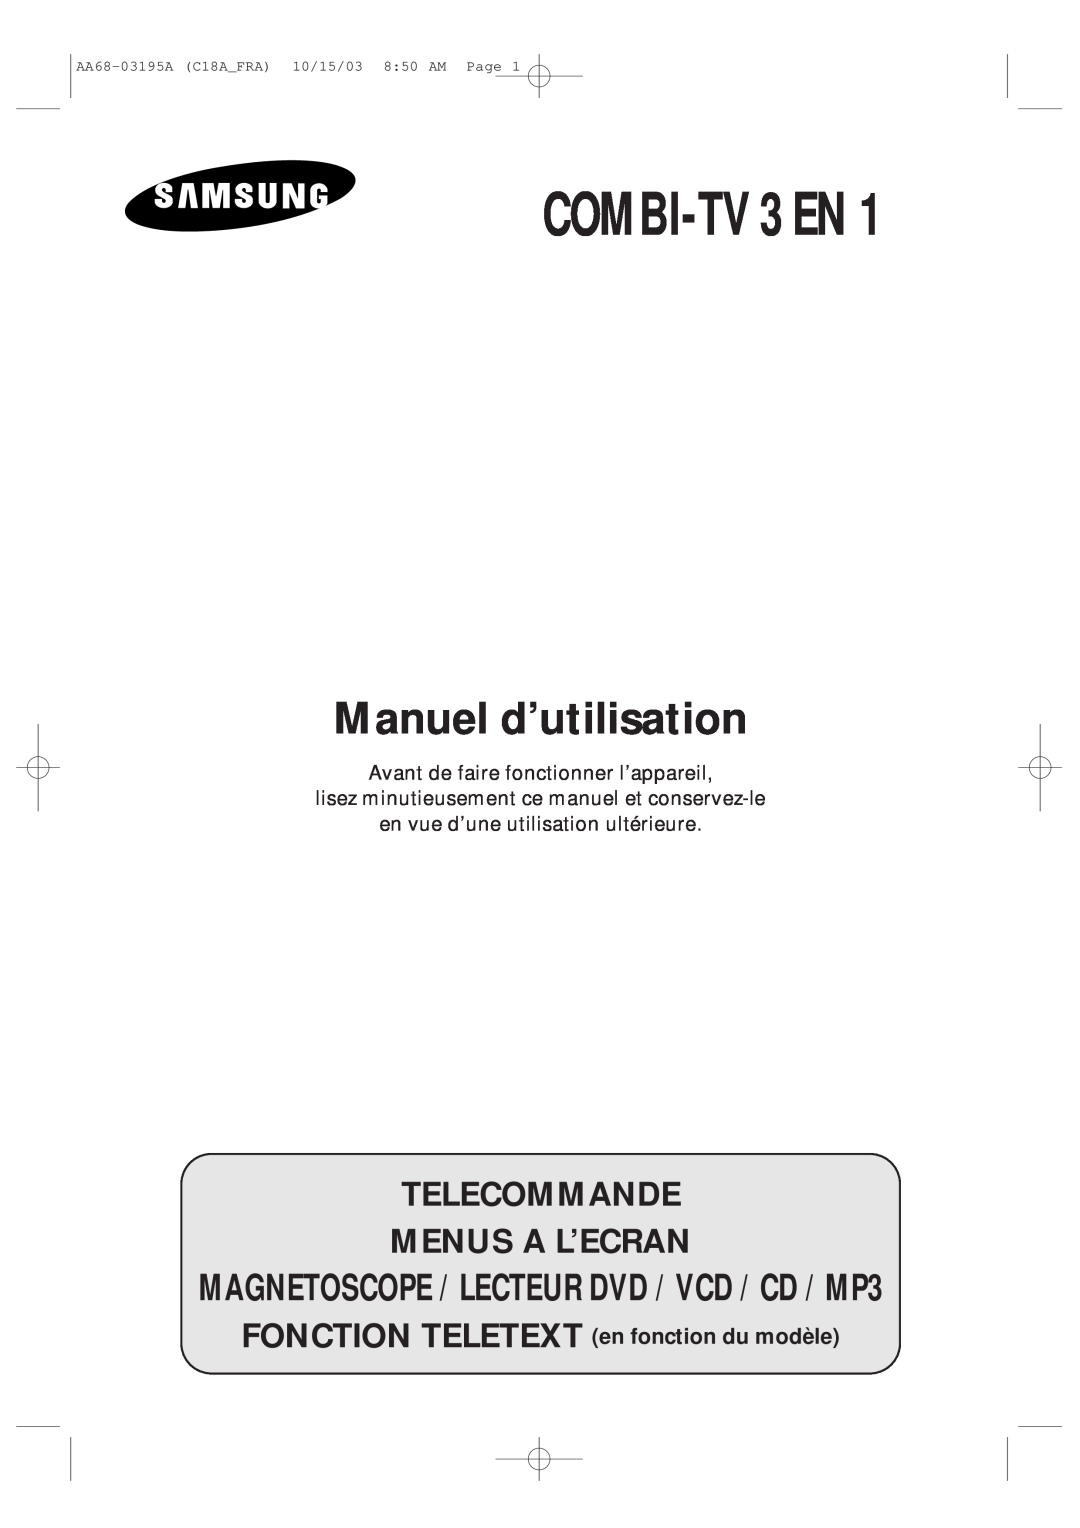 Samsung UW17J11VD5XXEF, UW17J11VD5XXEC manual Telecommande Menus A L’Ecran, COMBI-TV 3 EN, Manuel d’utilisation 